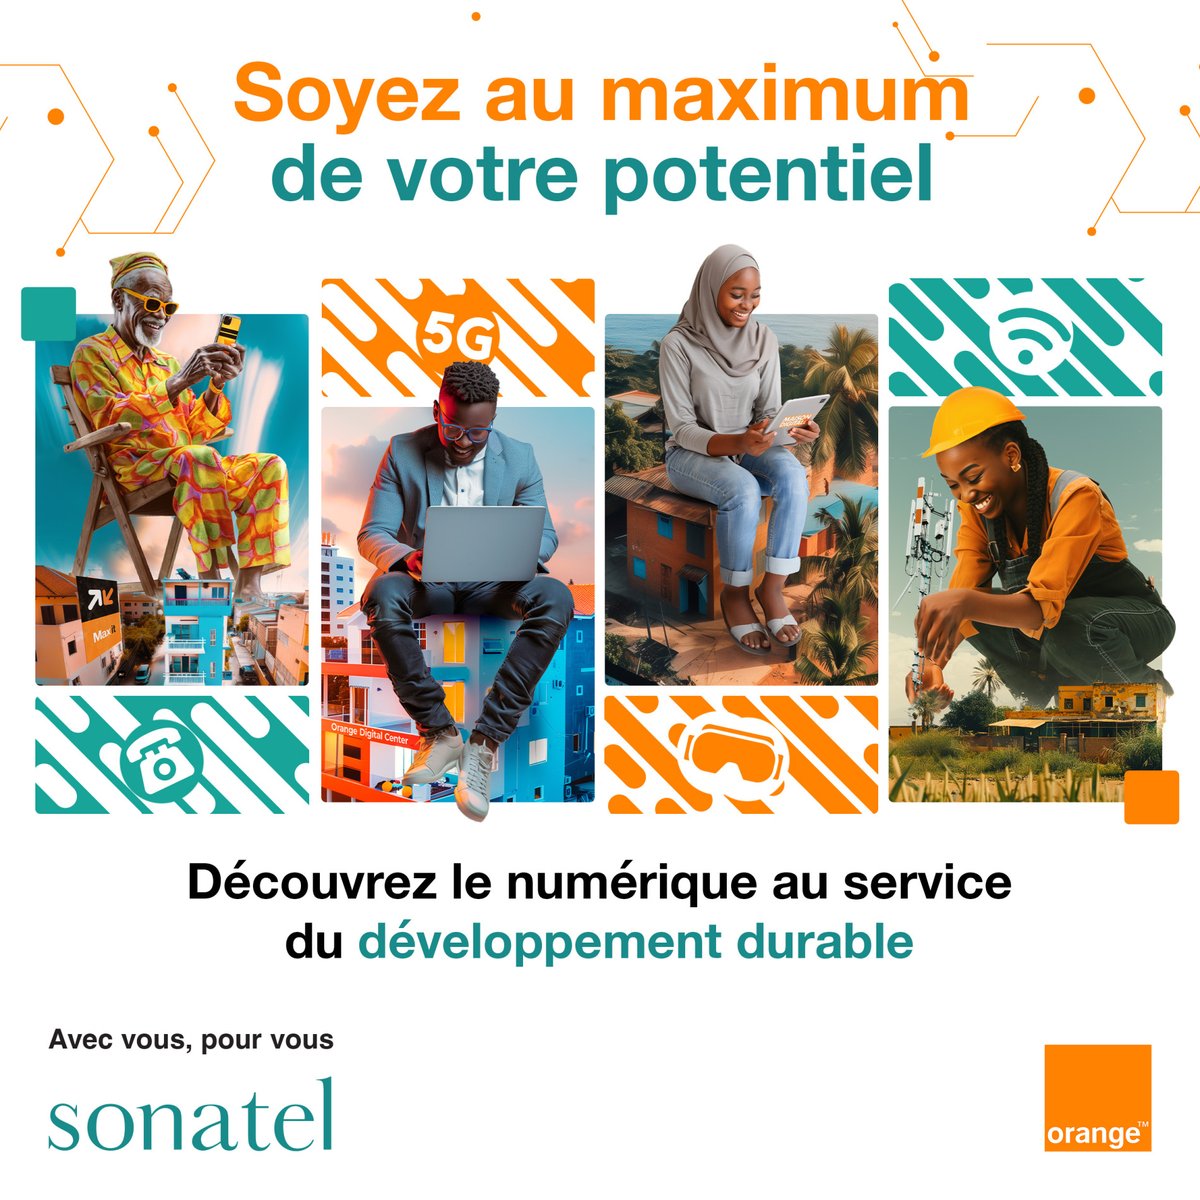 Soyez au maximum de votre potentiel ! A Sonatel, notre engagement en faveur de l’inclusion numérique et sociale au Sénégal a pour but de permettre à chacun de vous de libérer son potentiel.  La Journée Mondiale des Télécommunications dont le thème de cette année est «